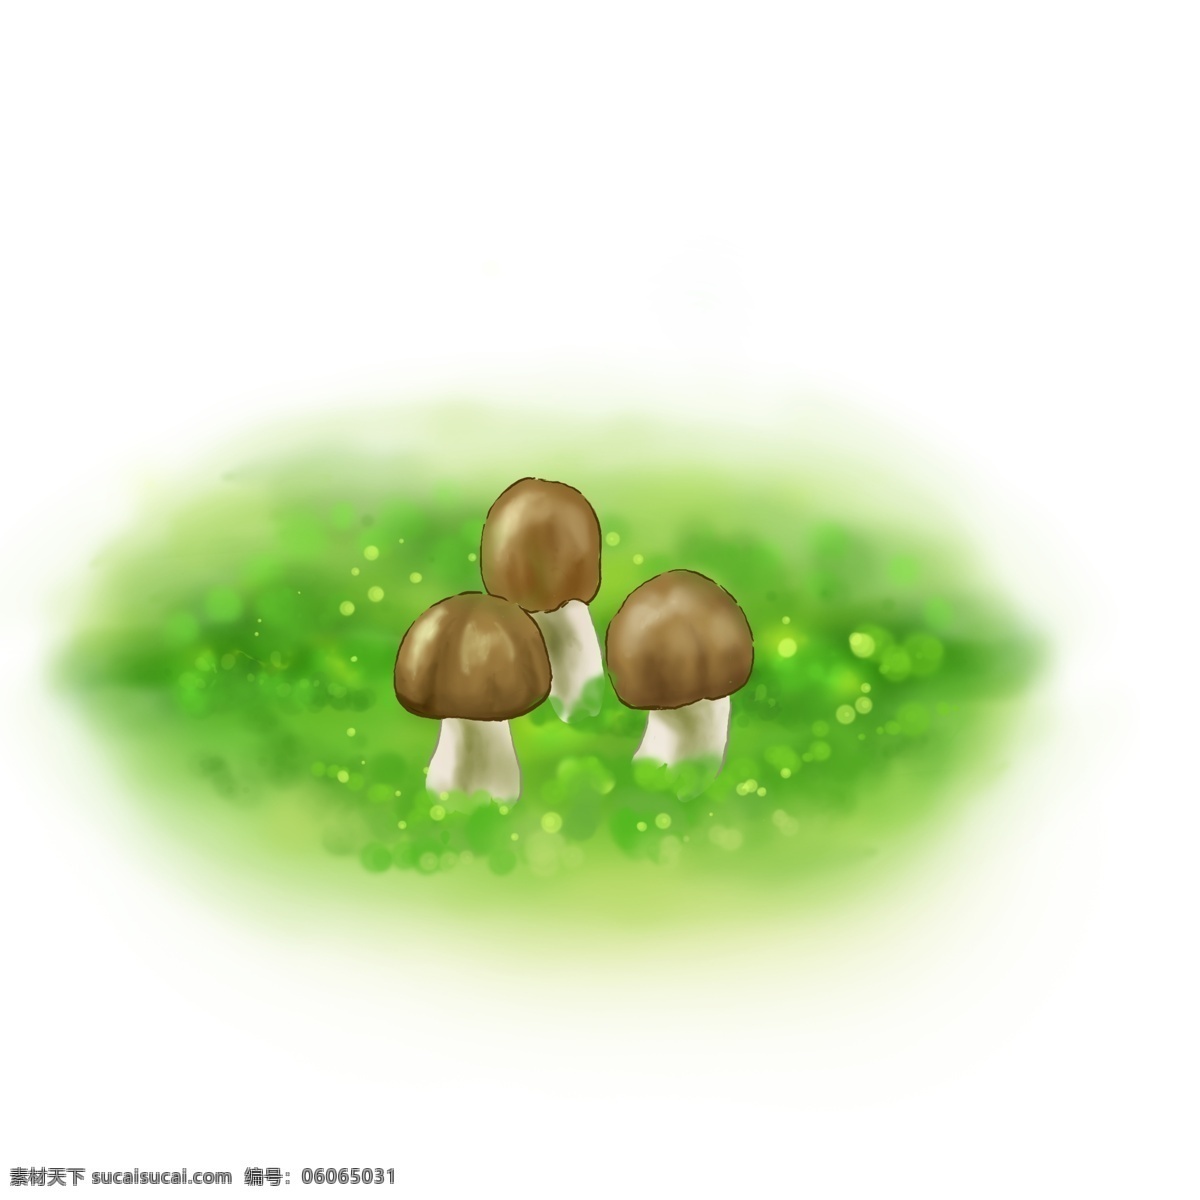 春天 手绘 蘑菇 插画 绿色 草地 苔藓 雨林 树林 林子 菌类 特写 清新 自然 食物 植物